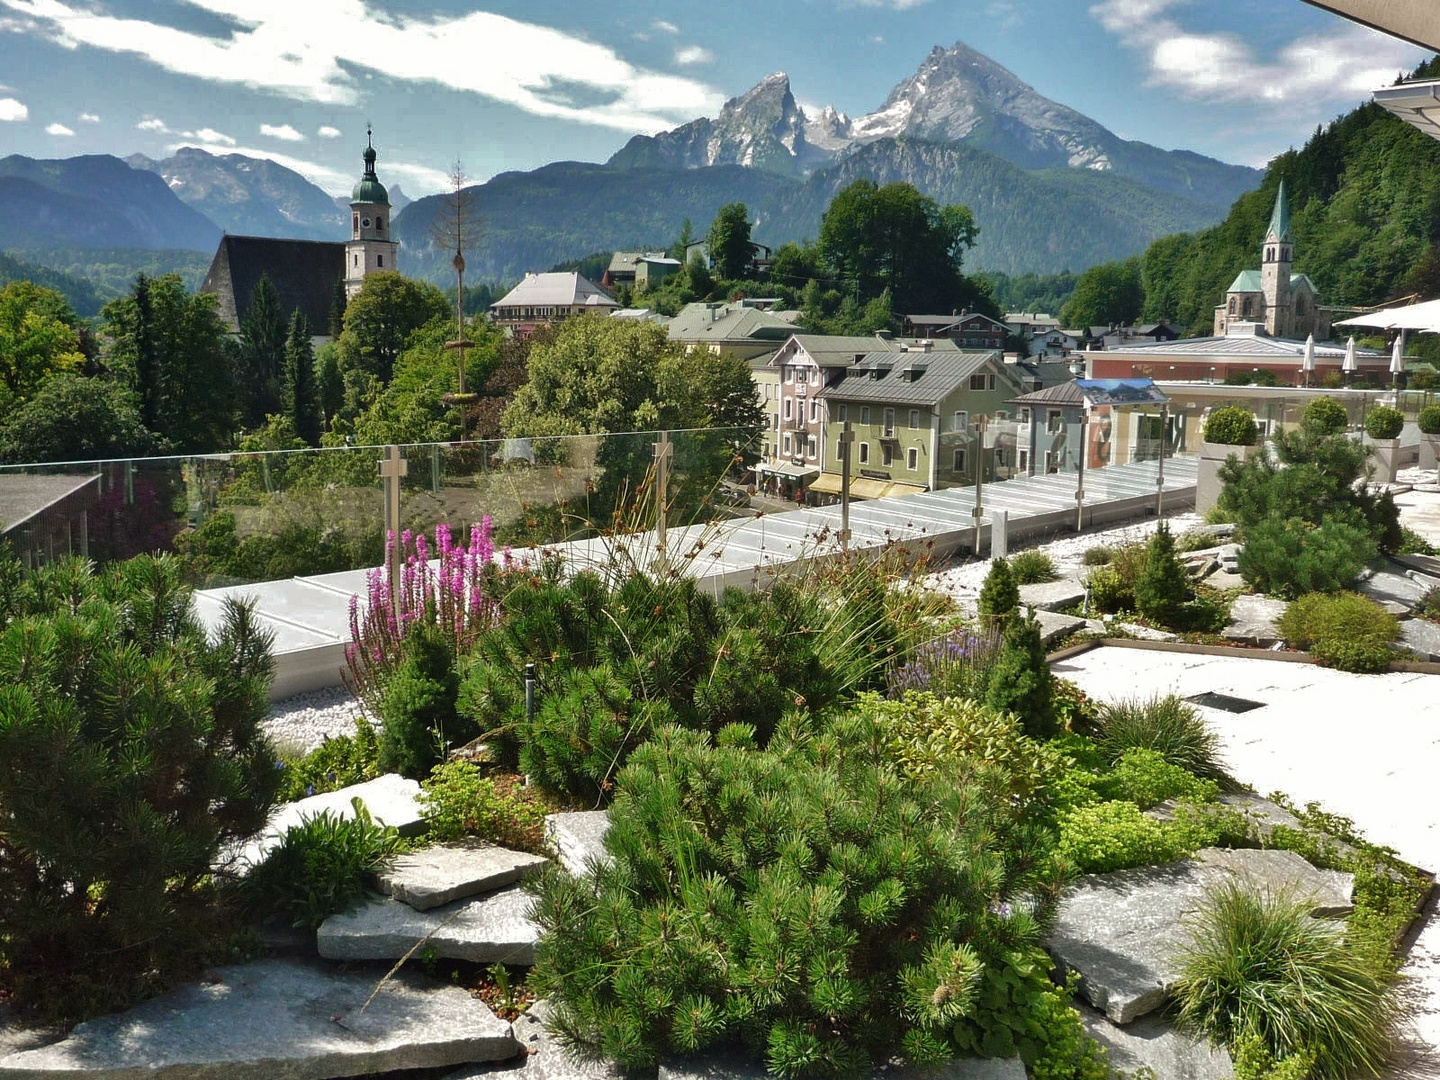 Blick von der Dachterrasse des Hotels "Edelweiss" auf  Berchtesgaden